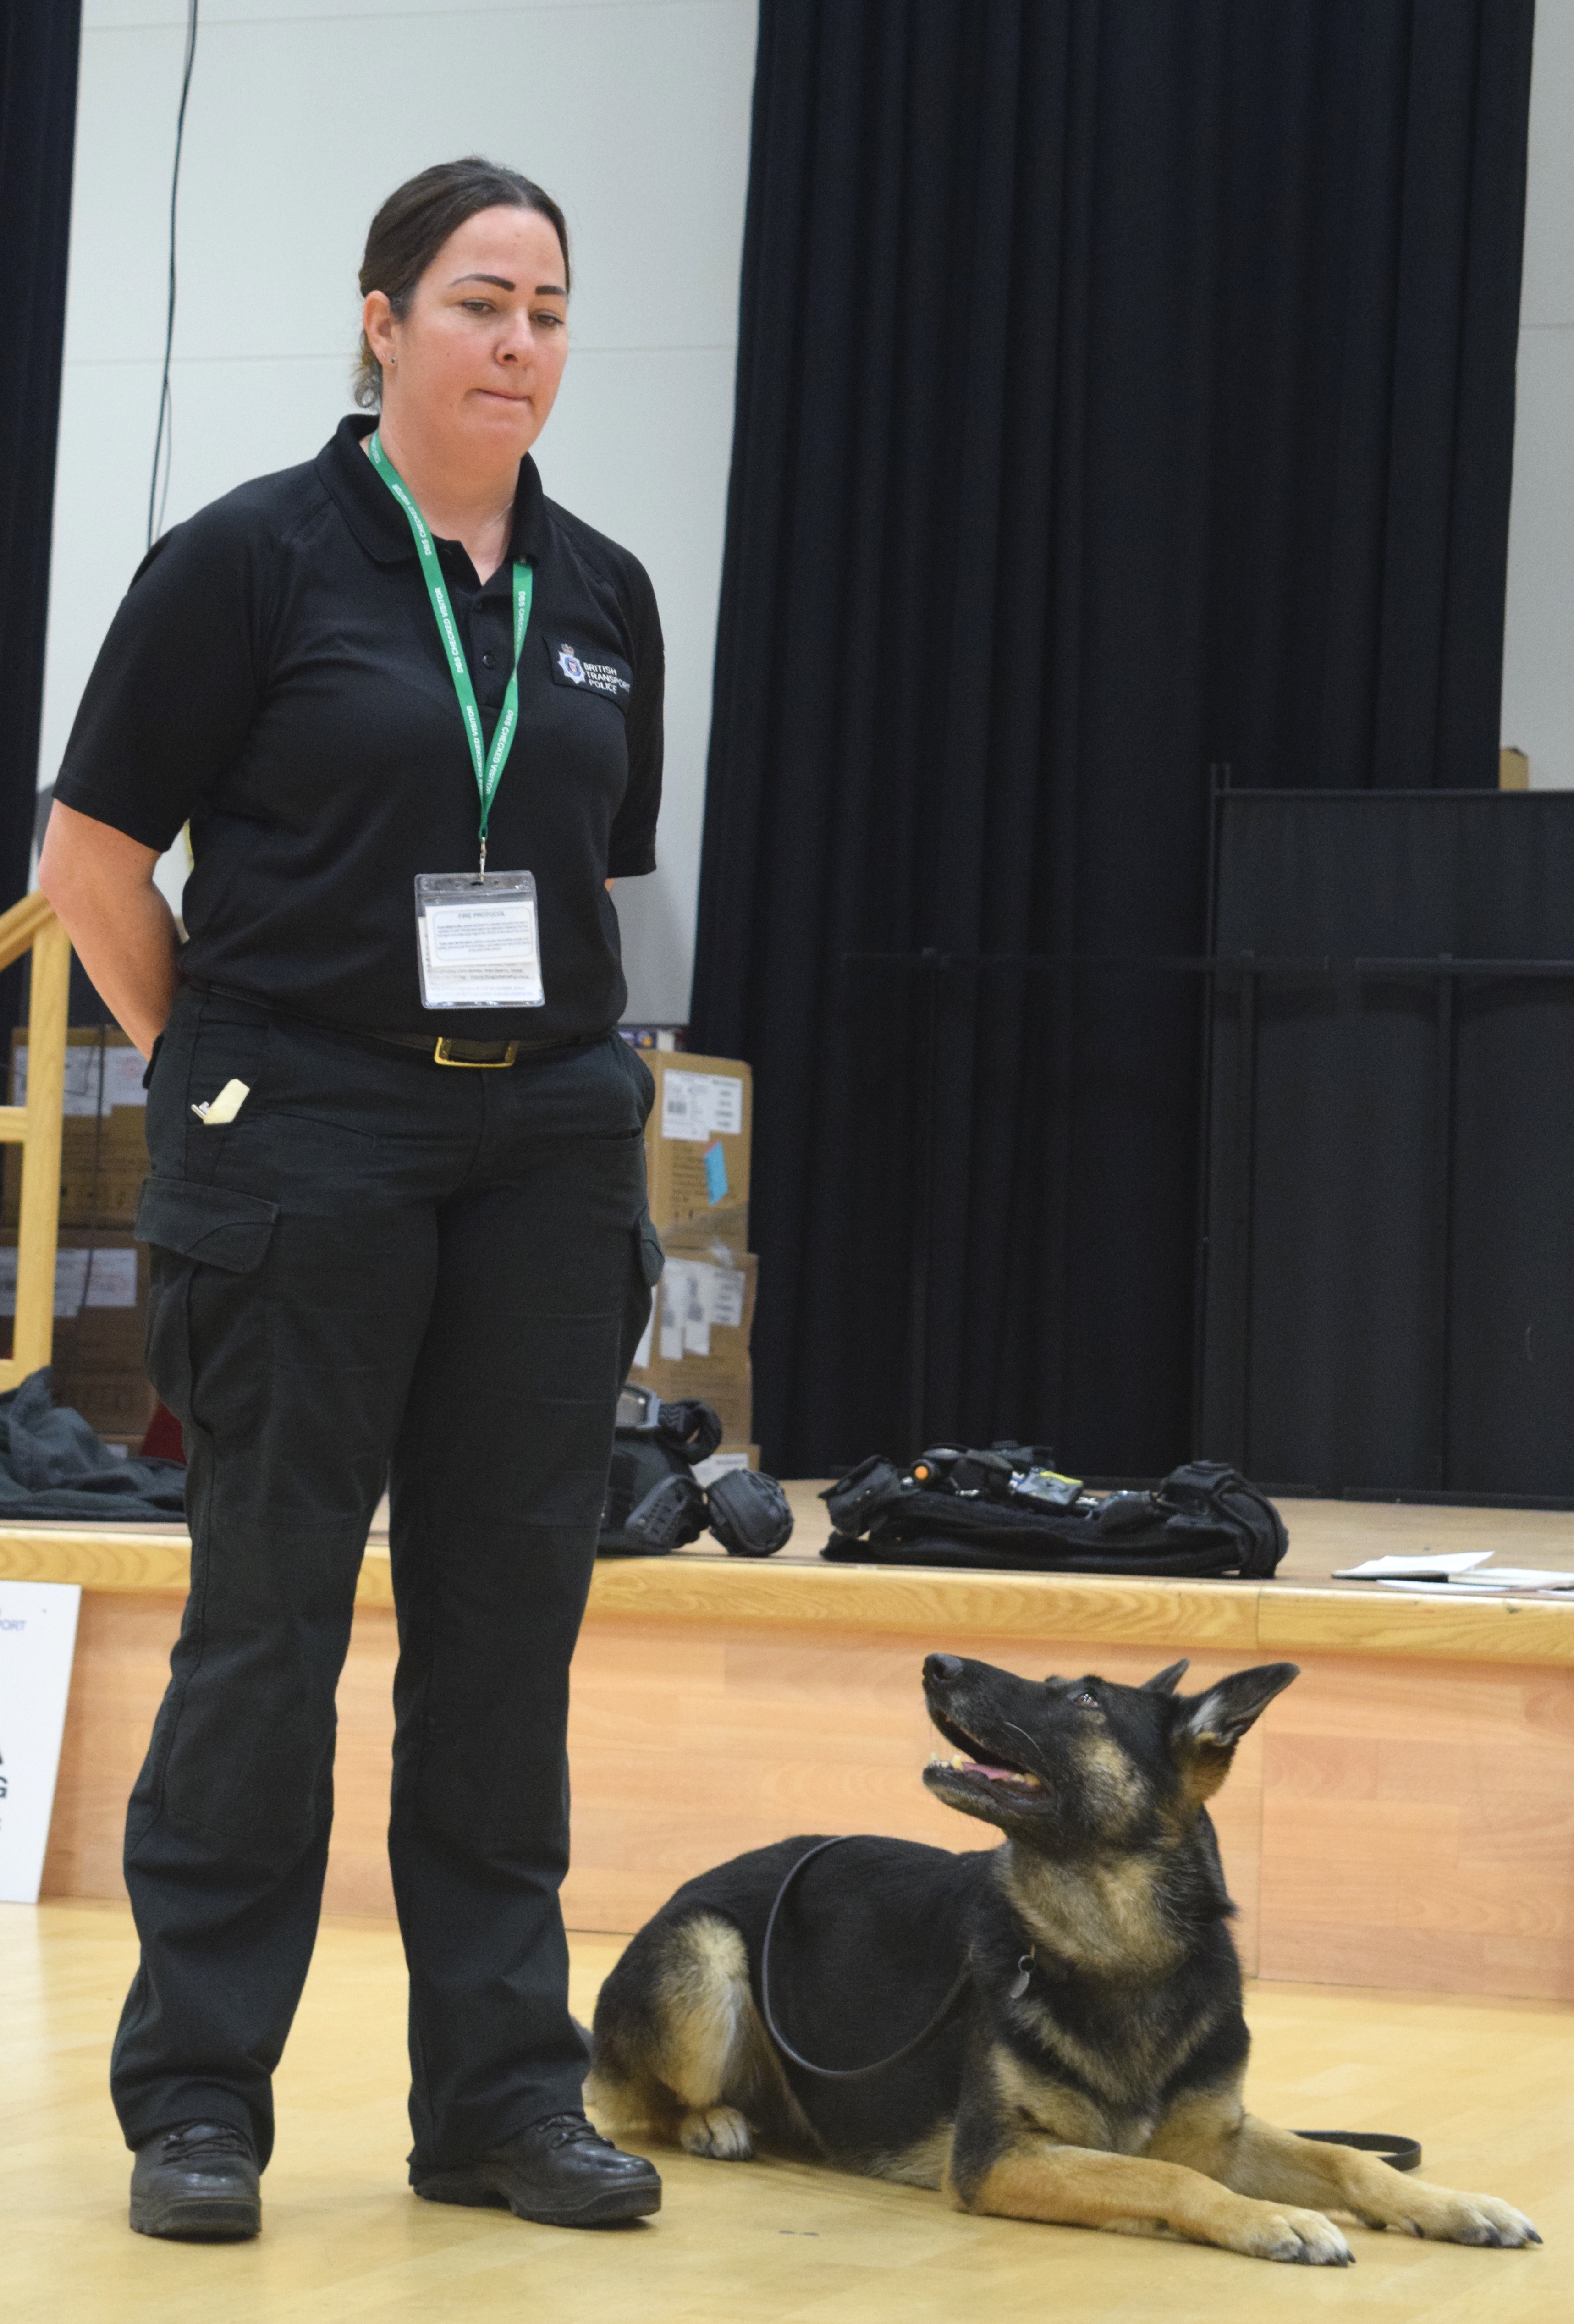 Police Dog Handler Presentation